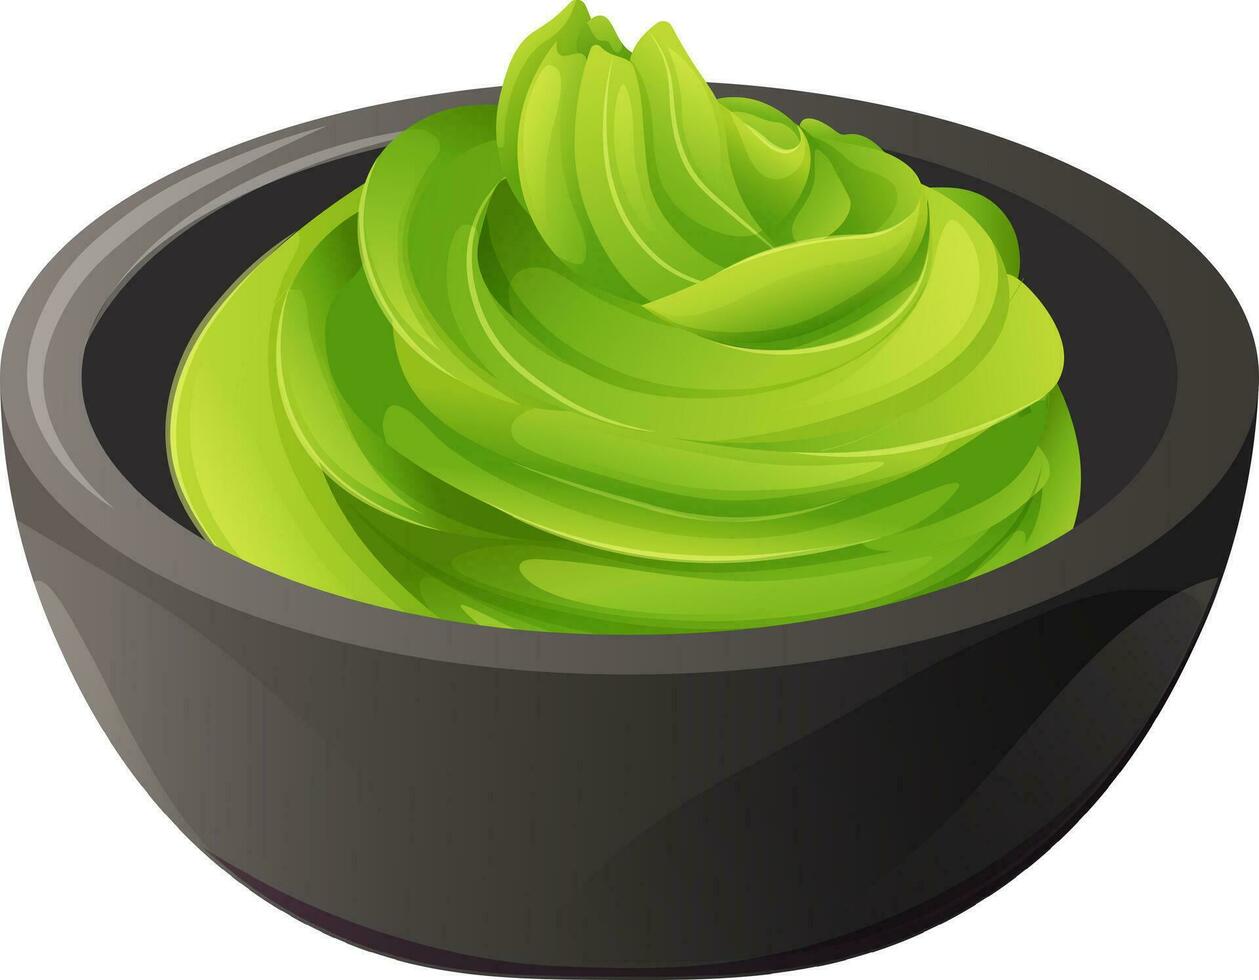 brilhante verde wasabi dentro Preto pratos. vetor ilustração do picante ásia prato em transparente fundo